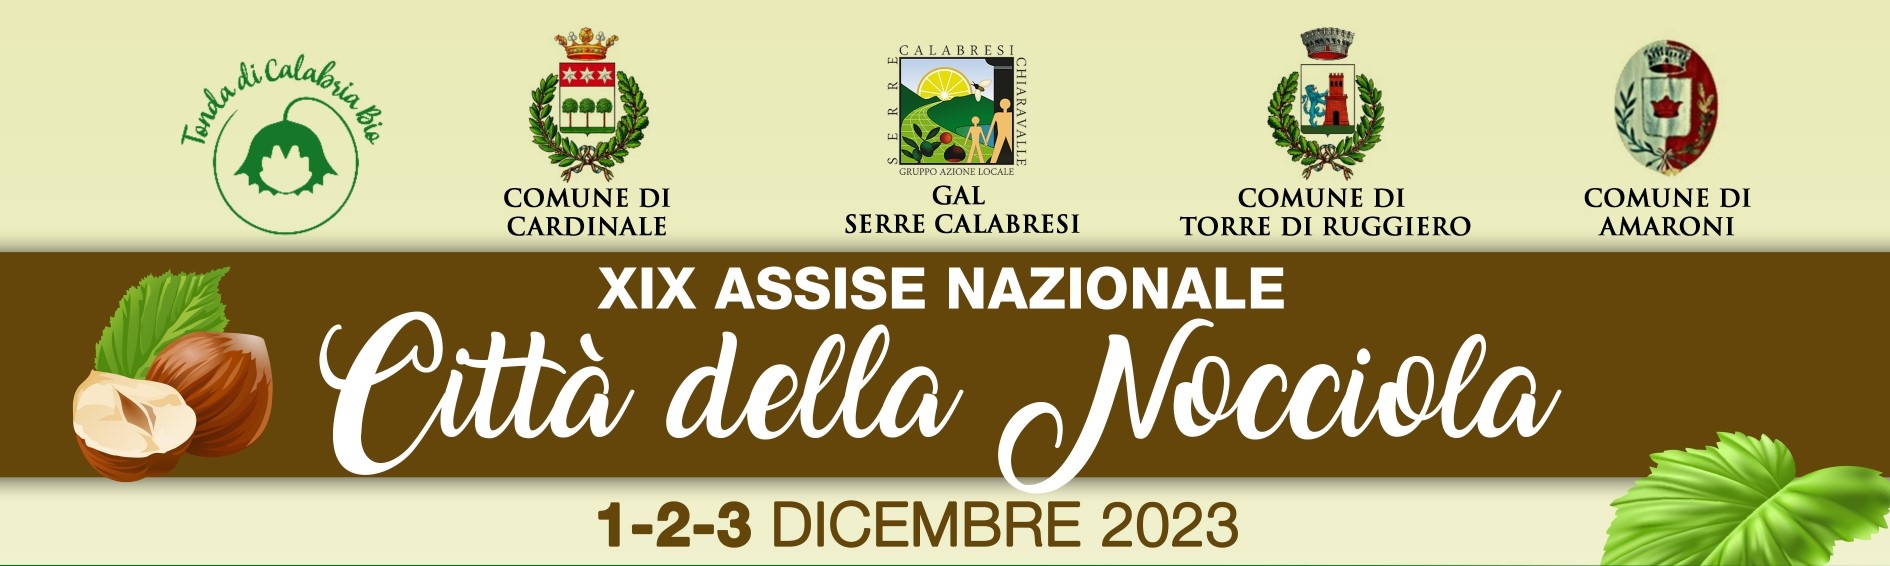 XIX Assise Nazionale CITTA’ della Nocciola in Calabria